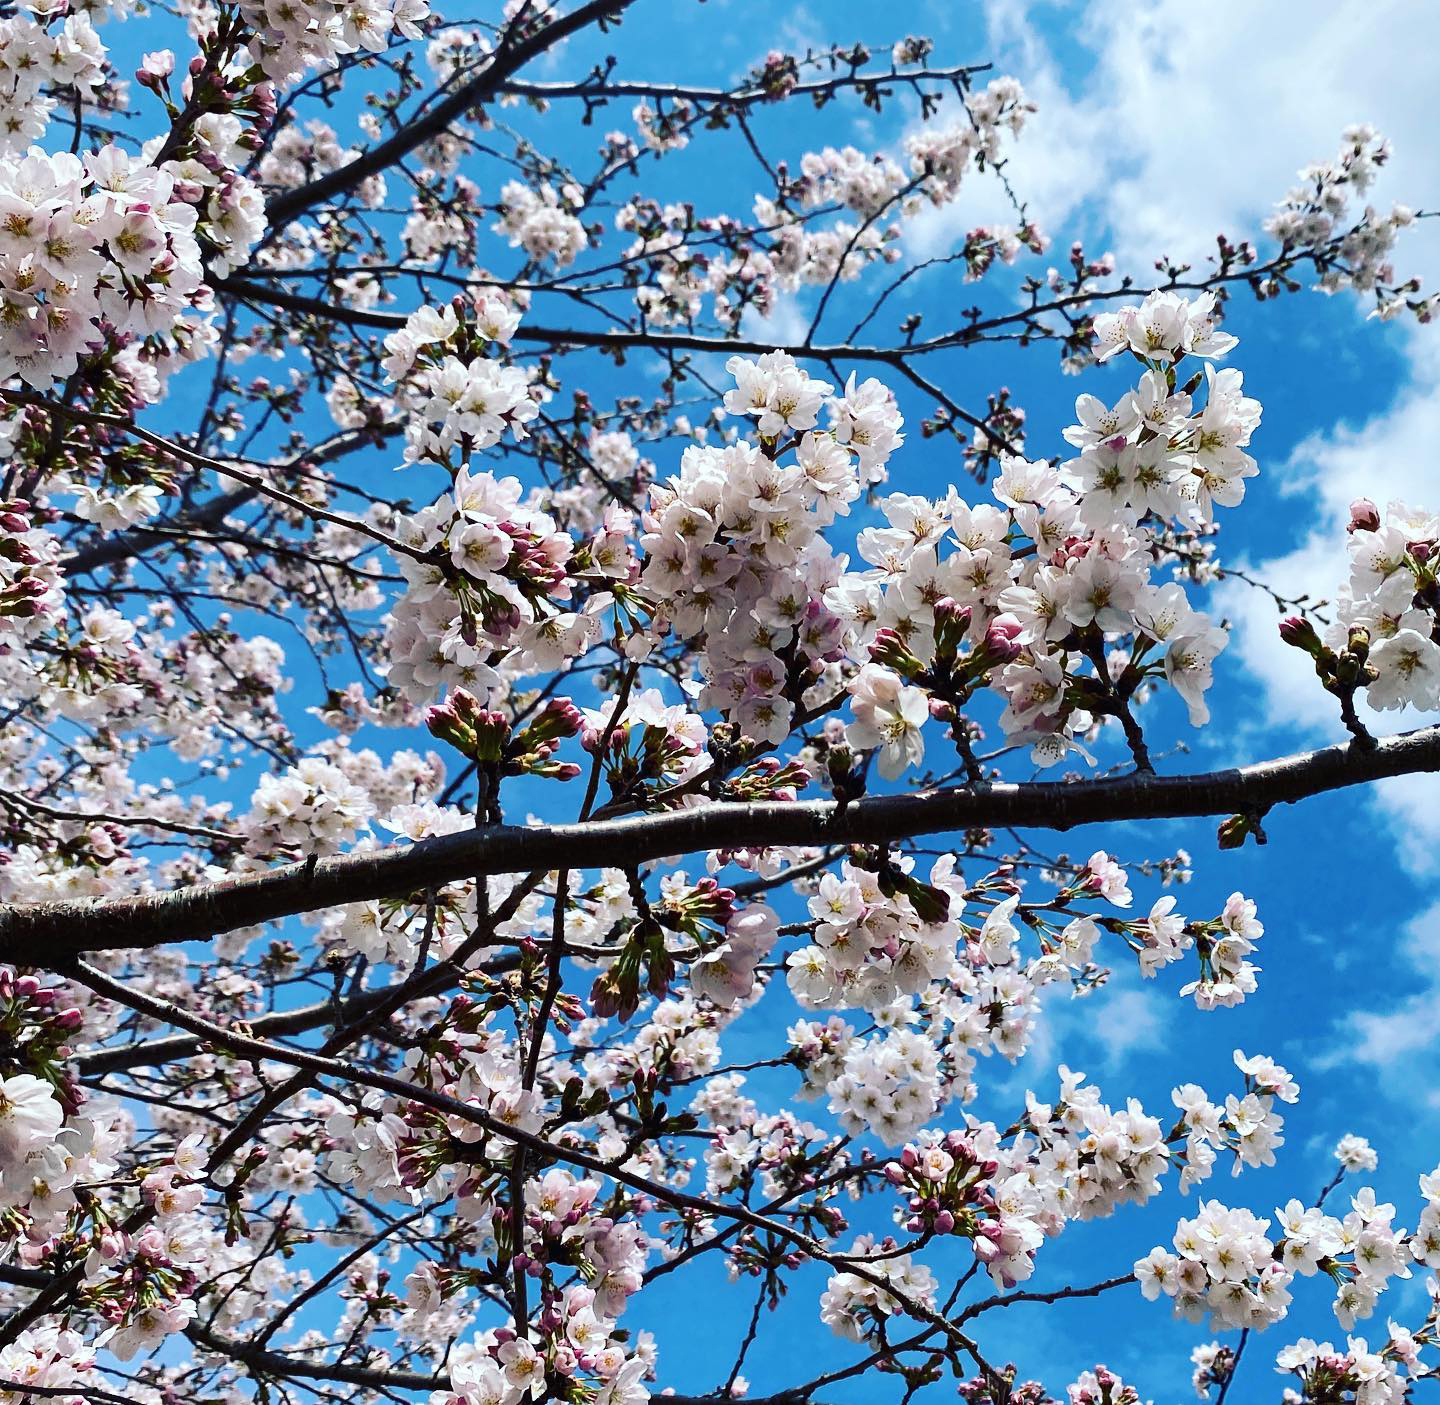 桜ソメイヨシノ他さまざまな植木の花々が咲きました